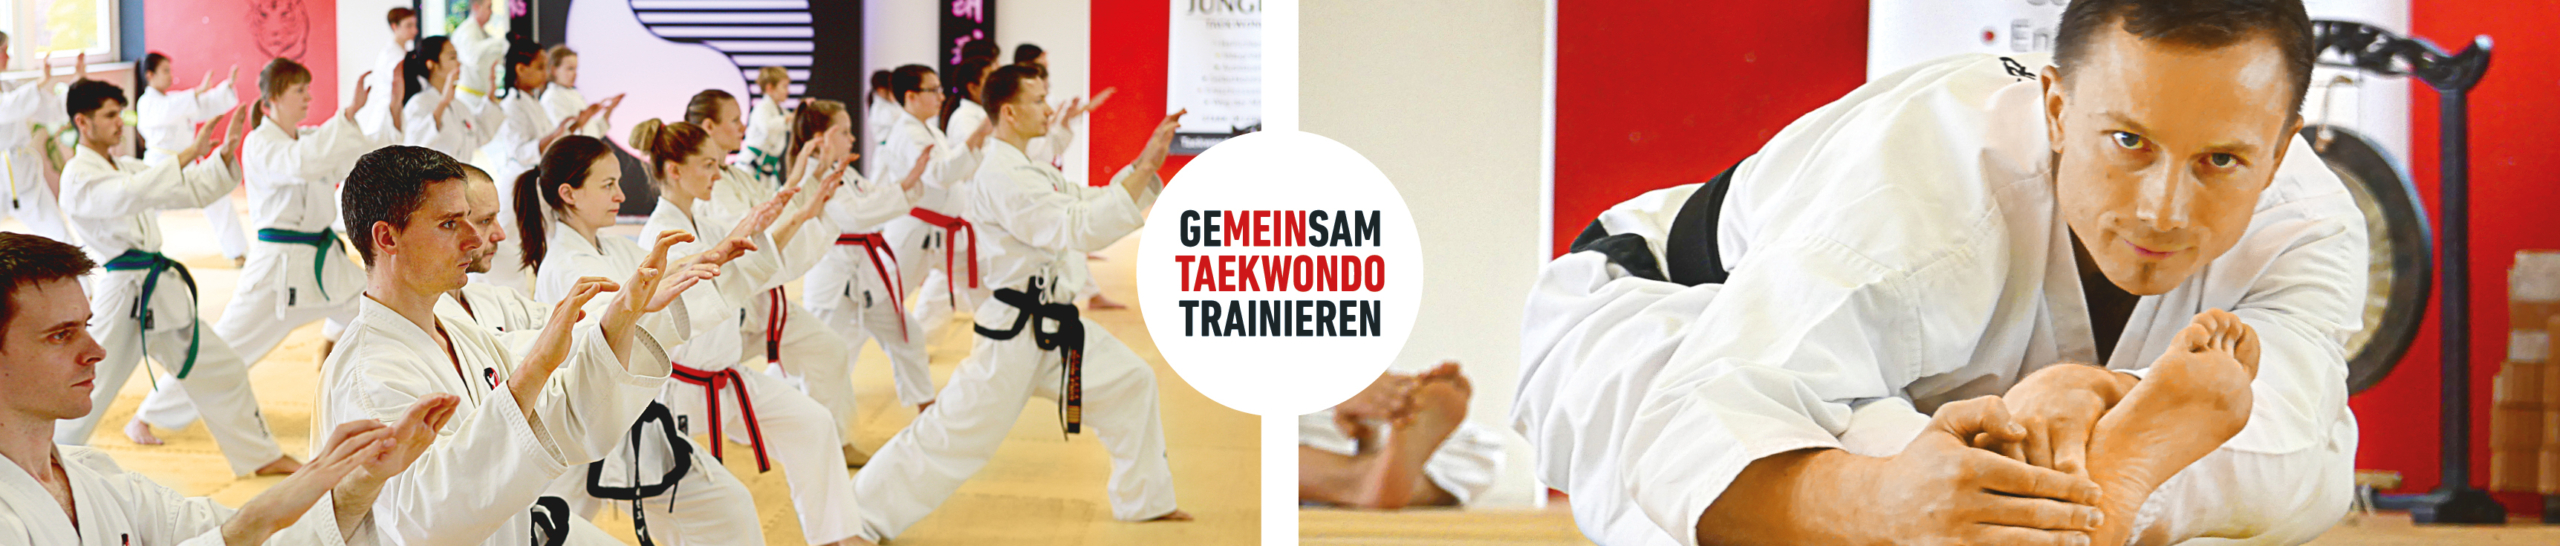 Gemeinsam Taekwondo Trainieren